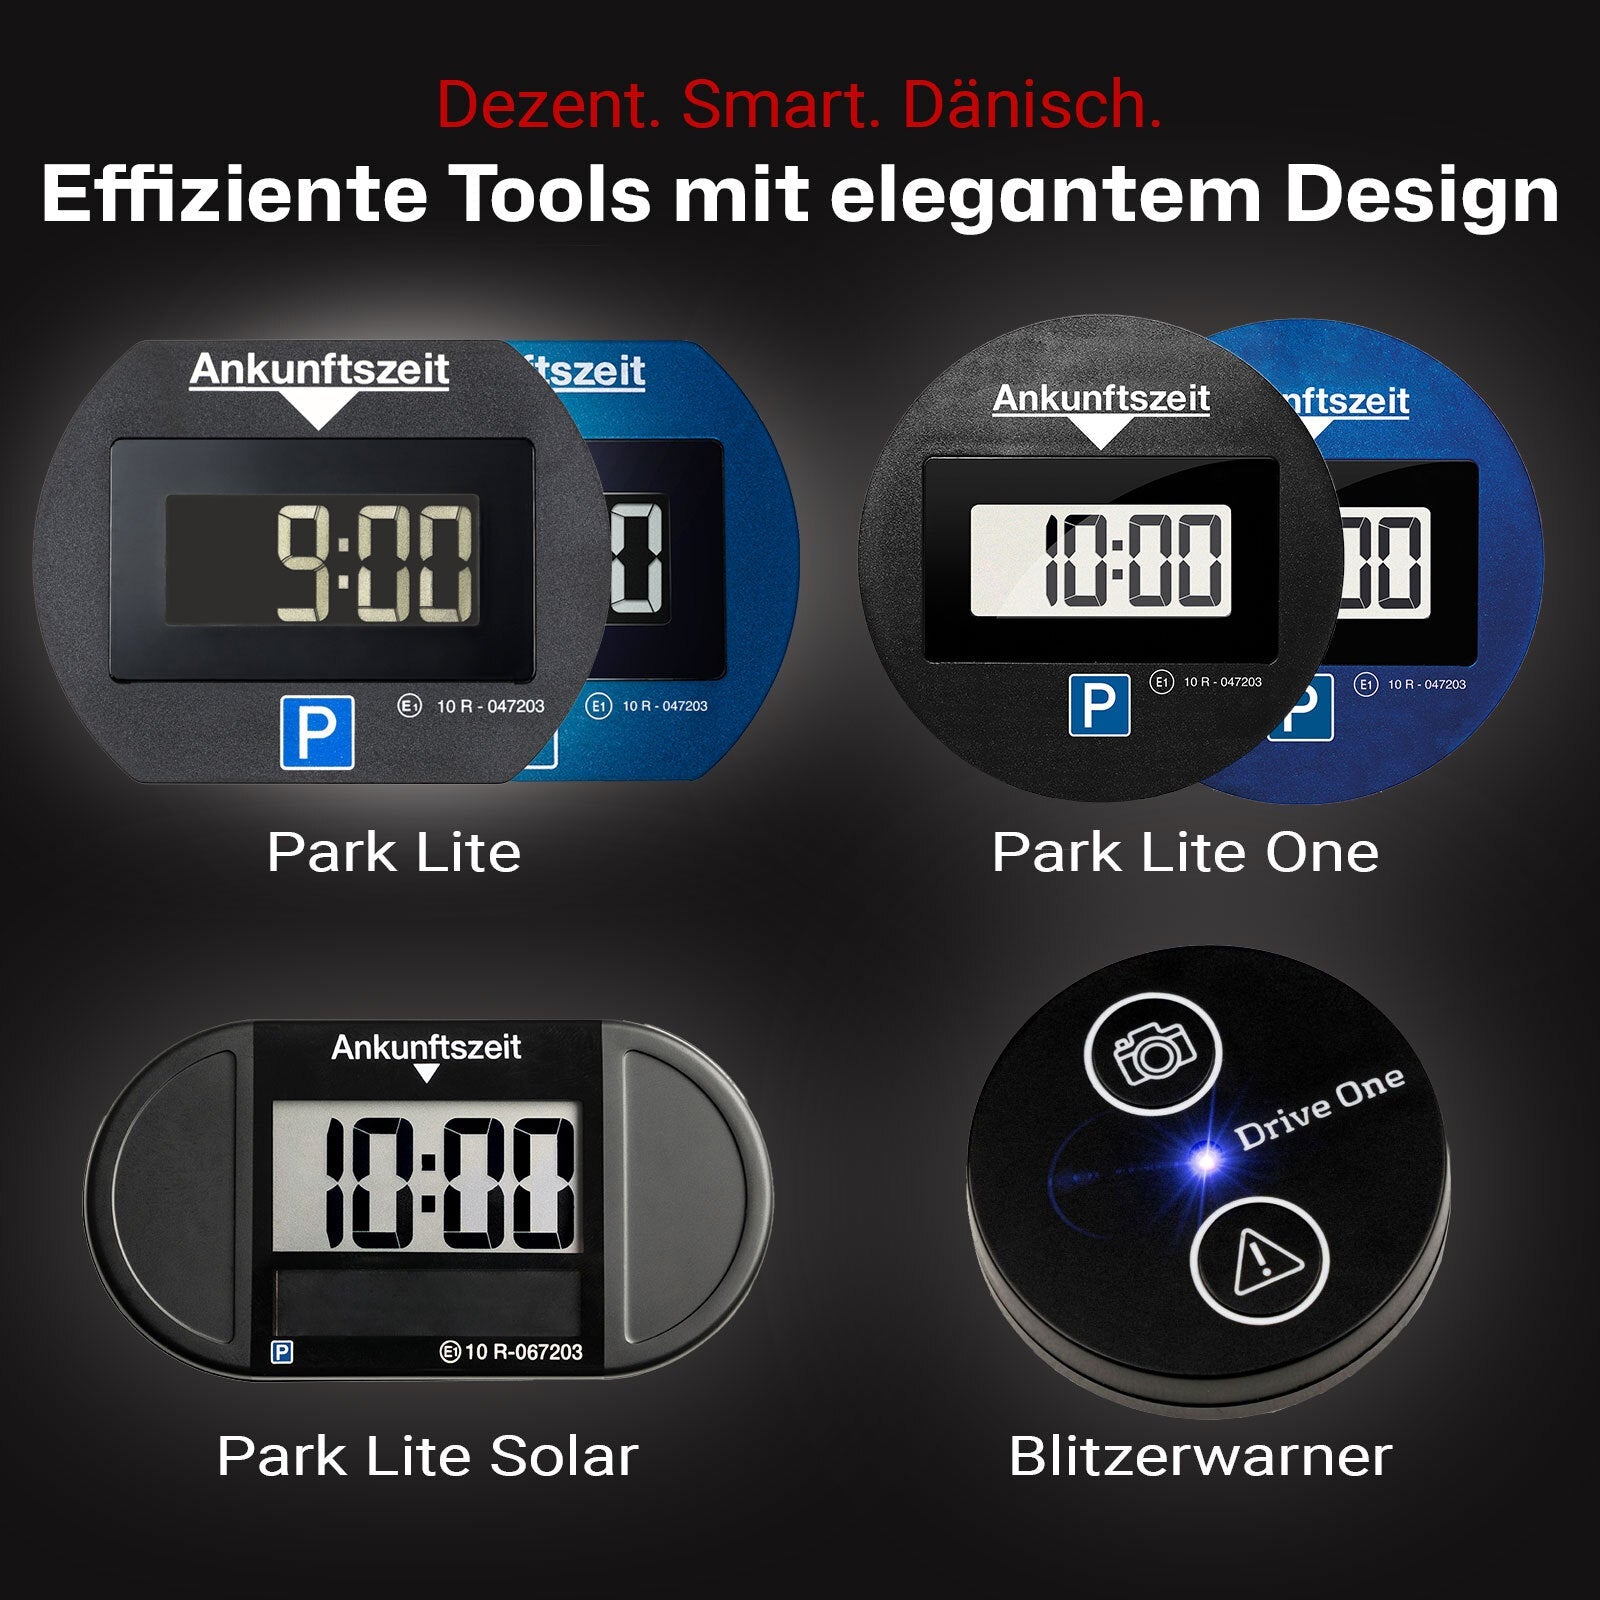 BMOT digitale Parkscheibe/Solarparkuhr mit Bewegungssensor für 15